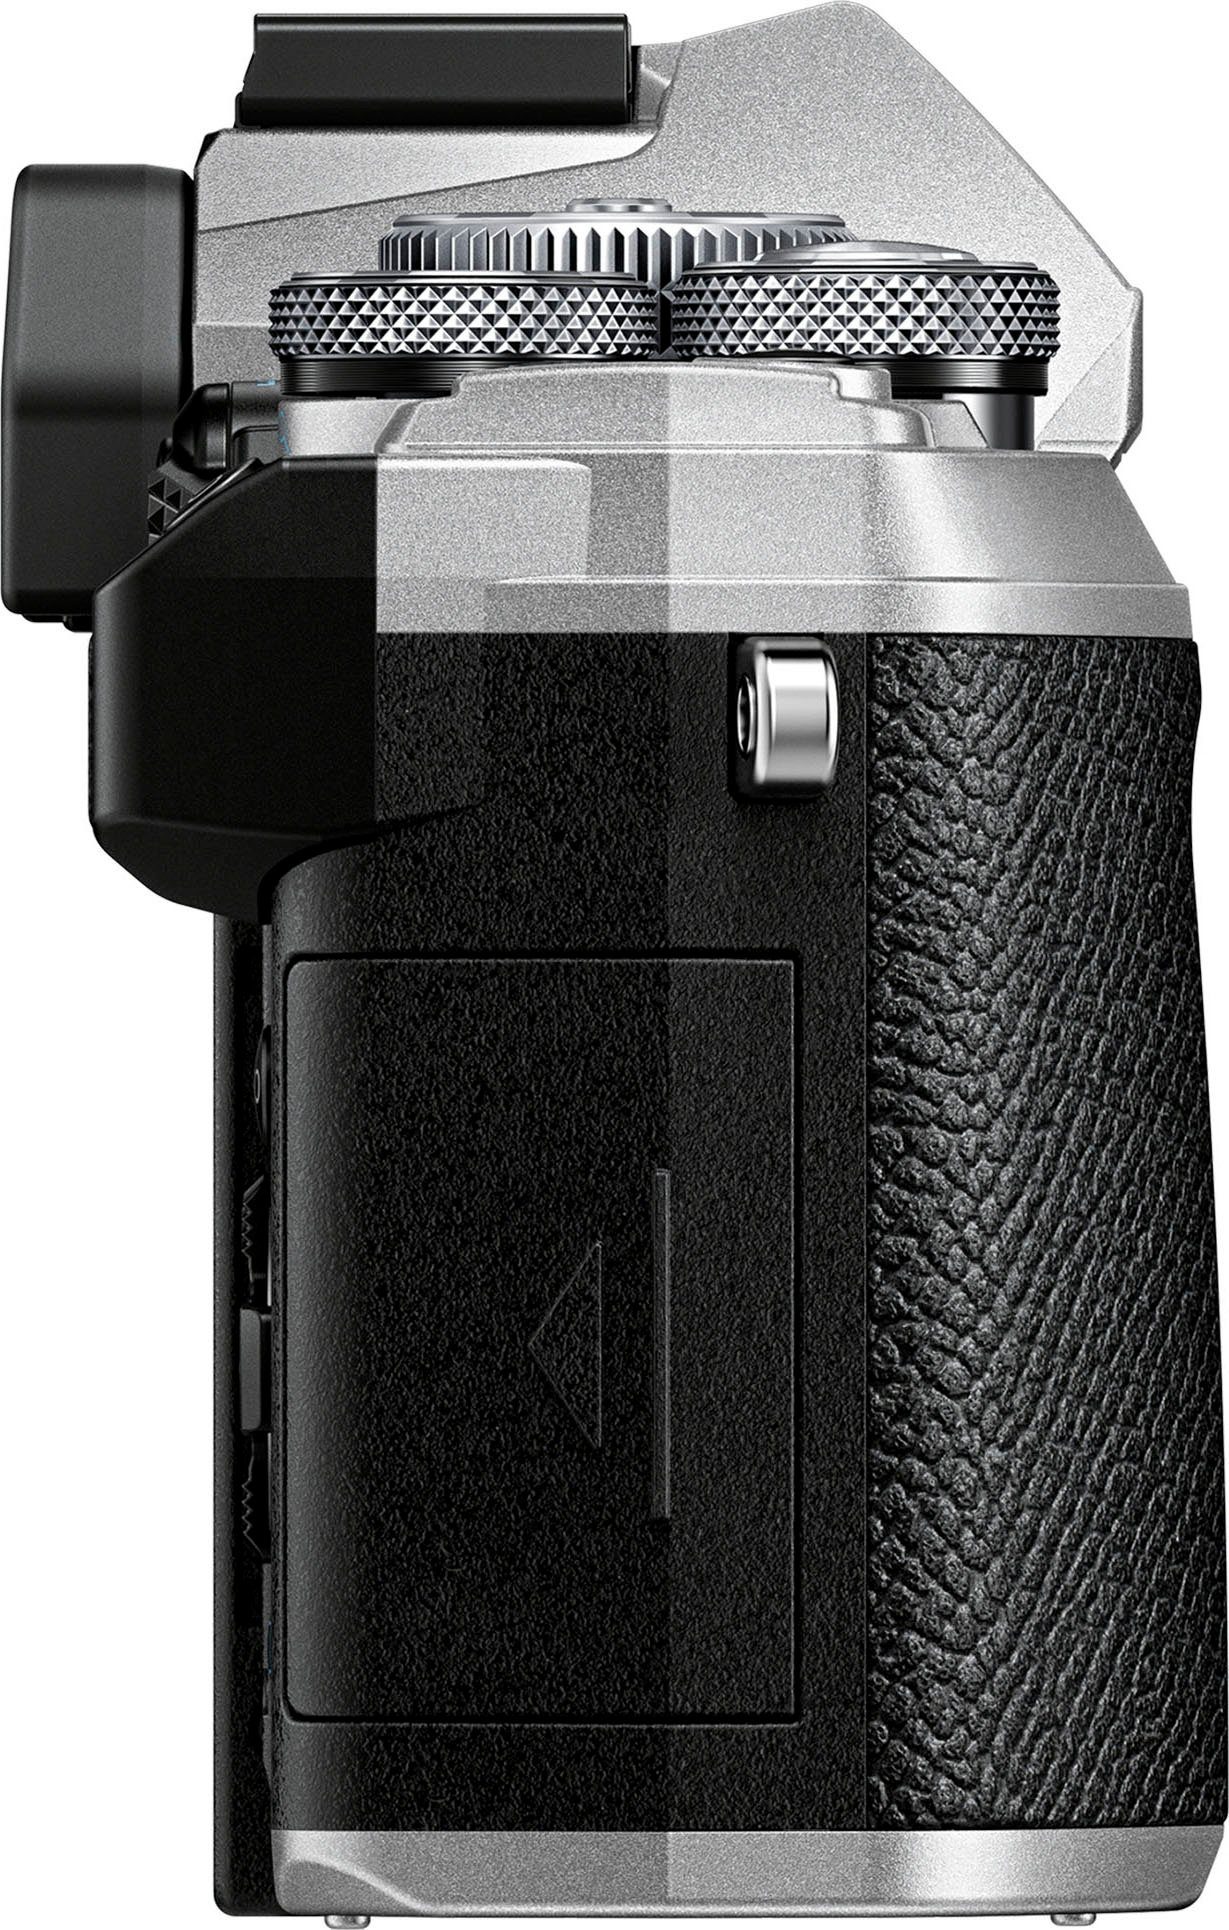 Body MP, Systemkamera-Body OM-5 Olympus (20,4 Bluetooth, WLAN (Wi-Fi)